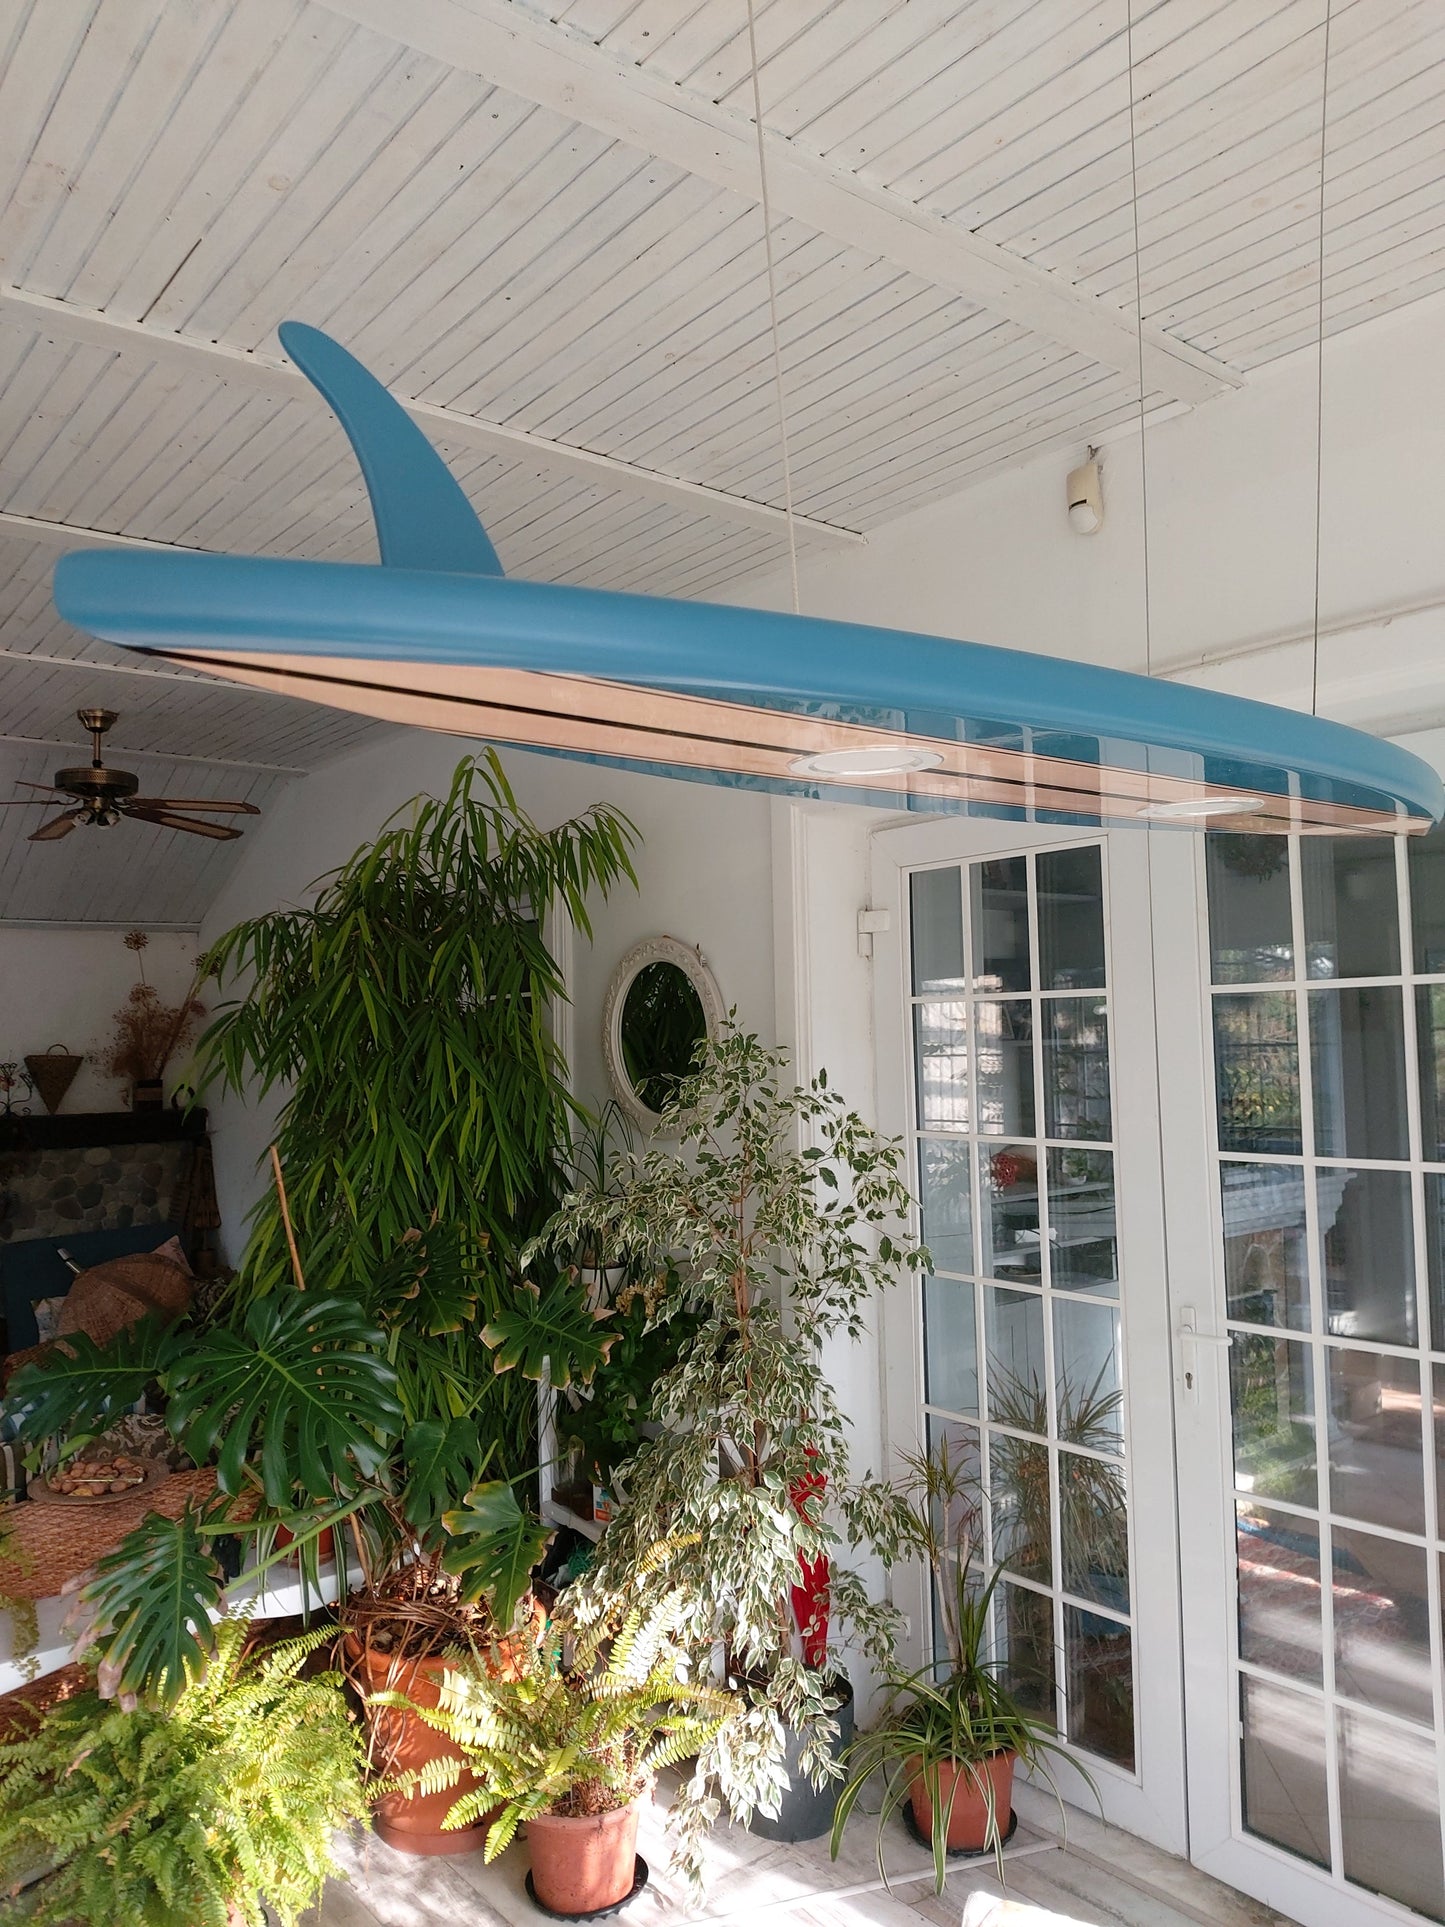 48 inch Surfboard Shaped Ceiling Chandelier - Pool Billiard Table Light